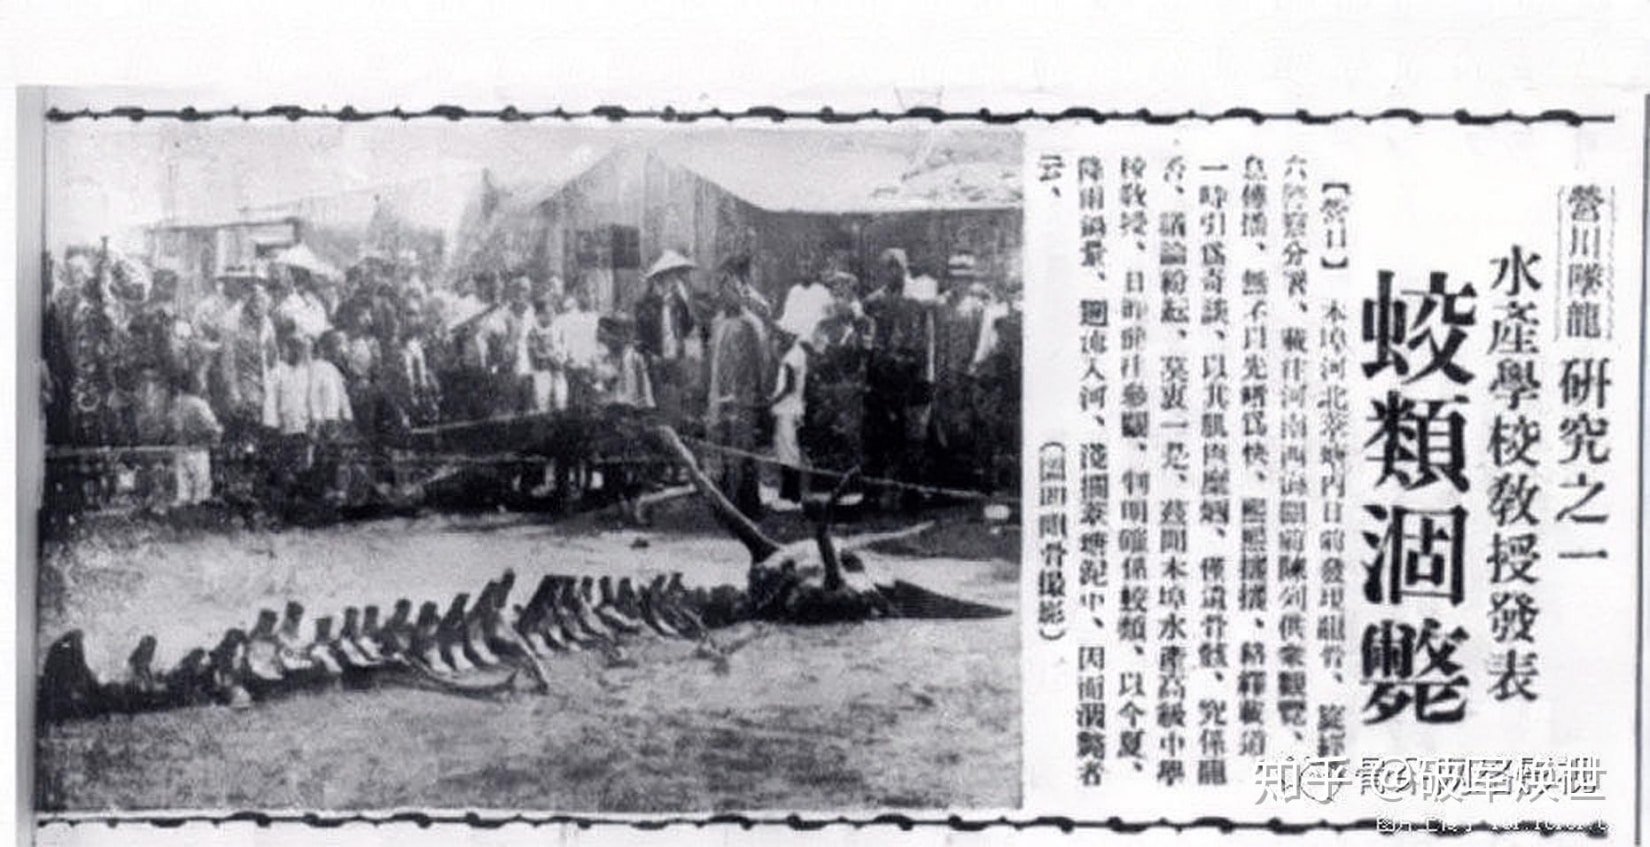 Bức ảnh bộ xương Rồng rơi ở Doanh Khẩu, Liêu Ninh, Trung Quốc được đăng trên báo Thịnh Kinh thời báo năm 1934